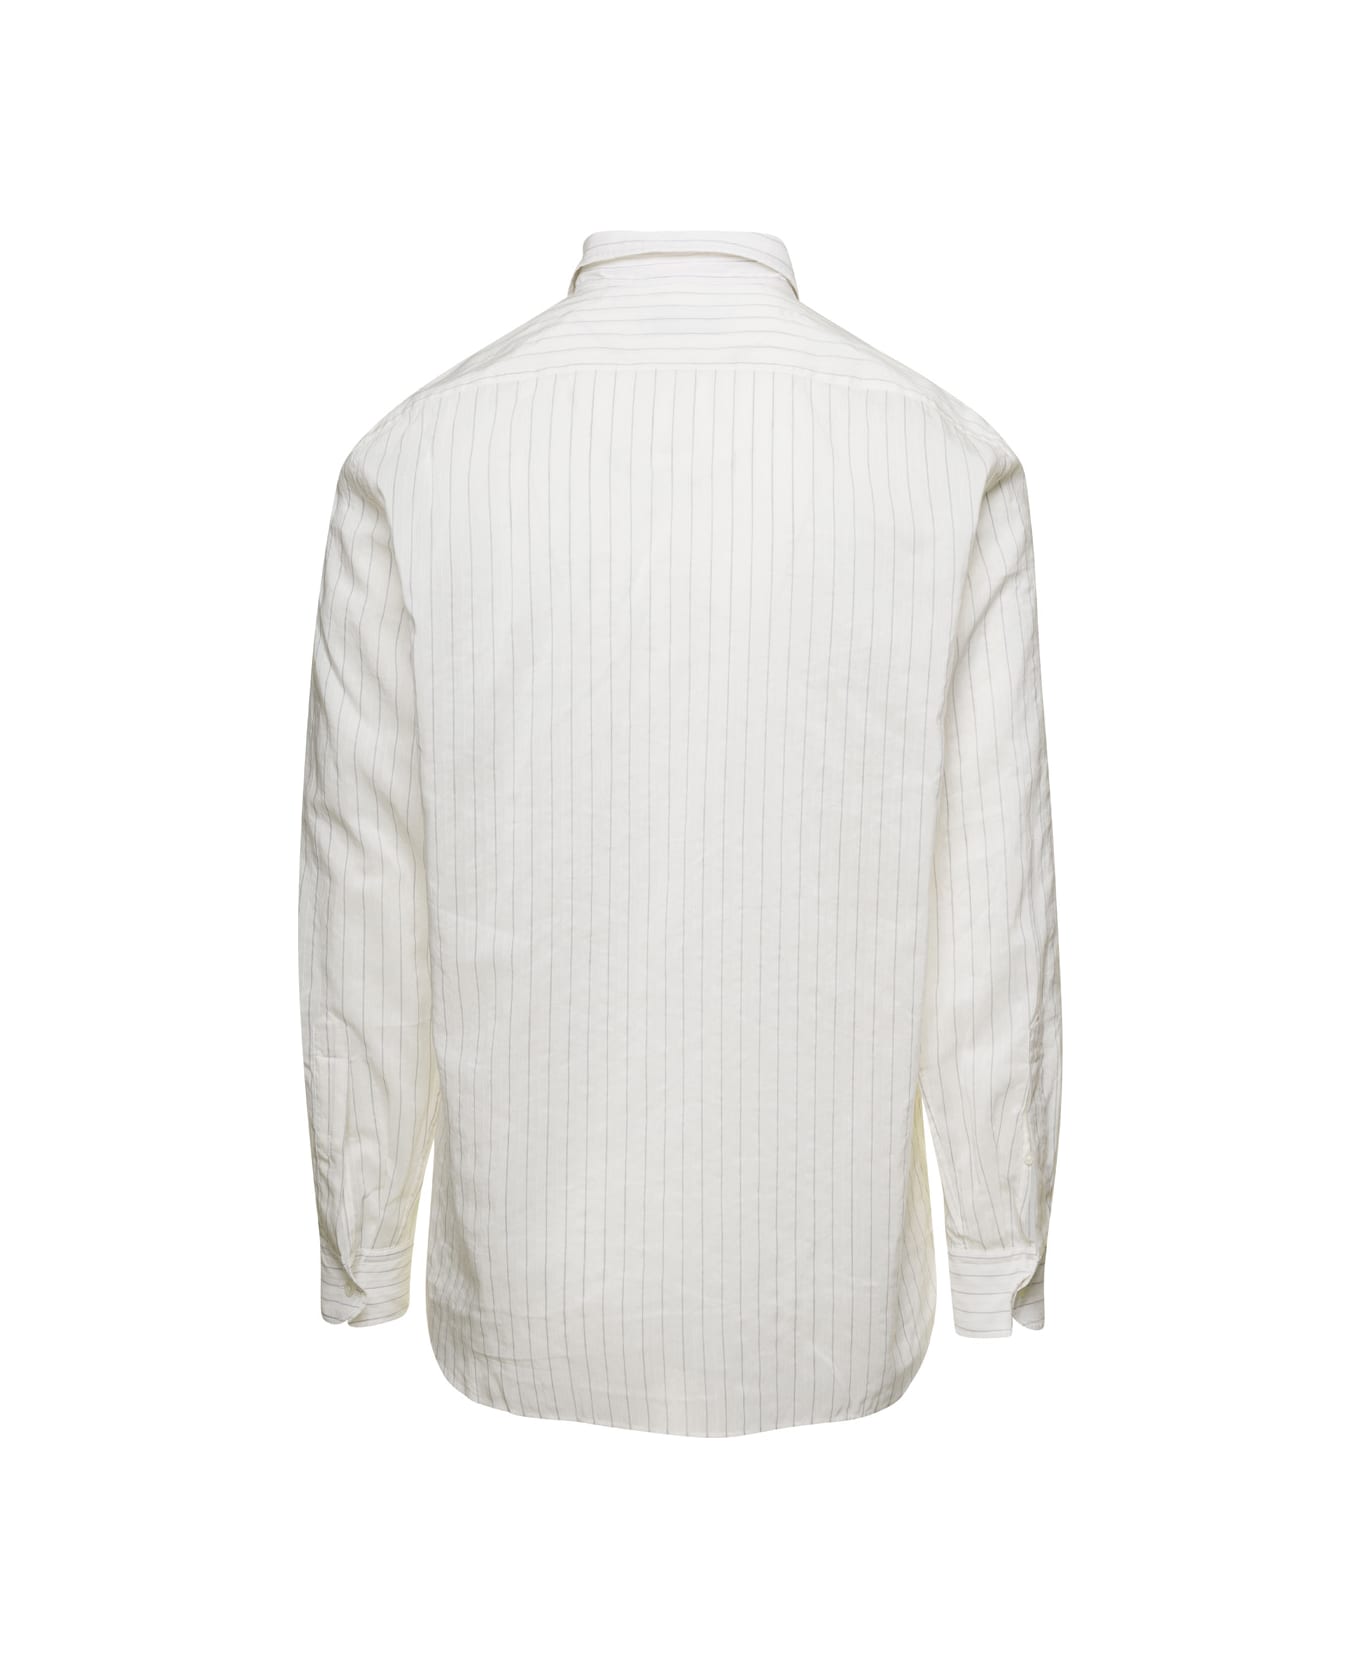 Lardini White Classic Shirt In Cotton Blend Man - White シャツ